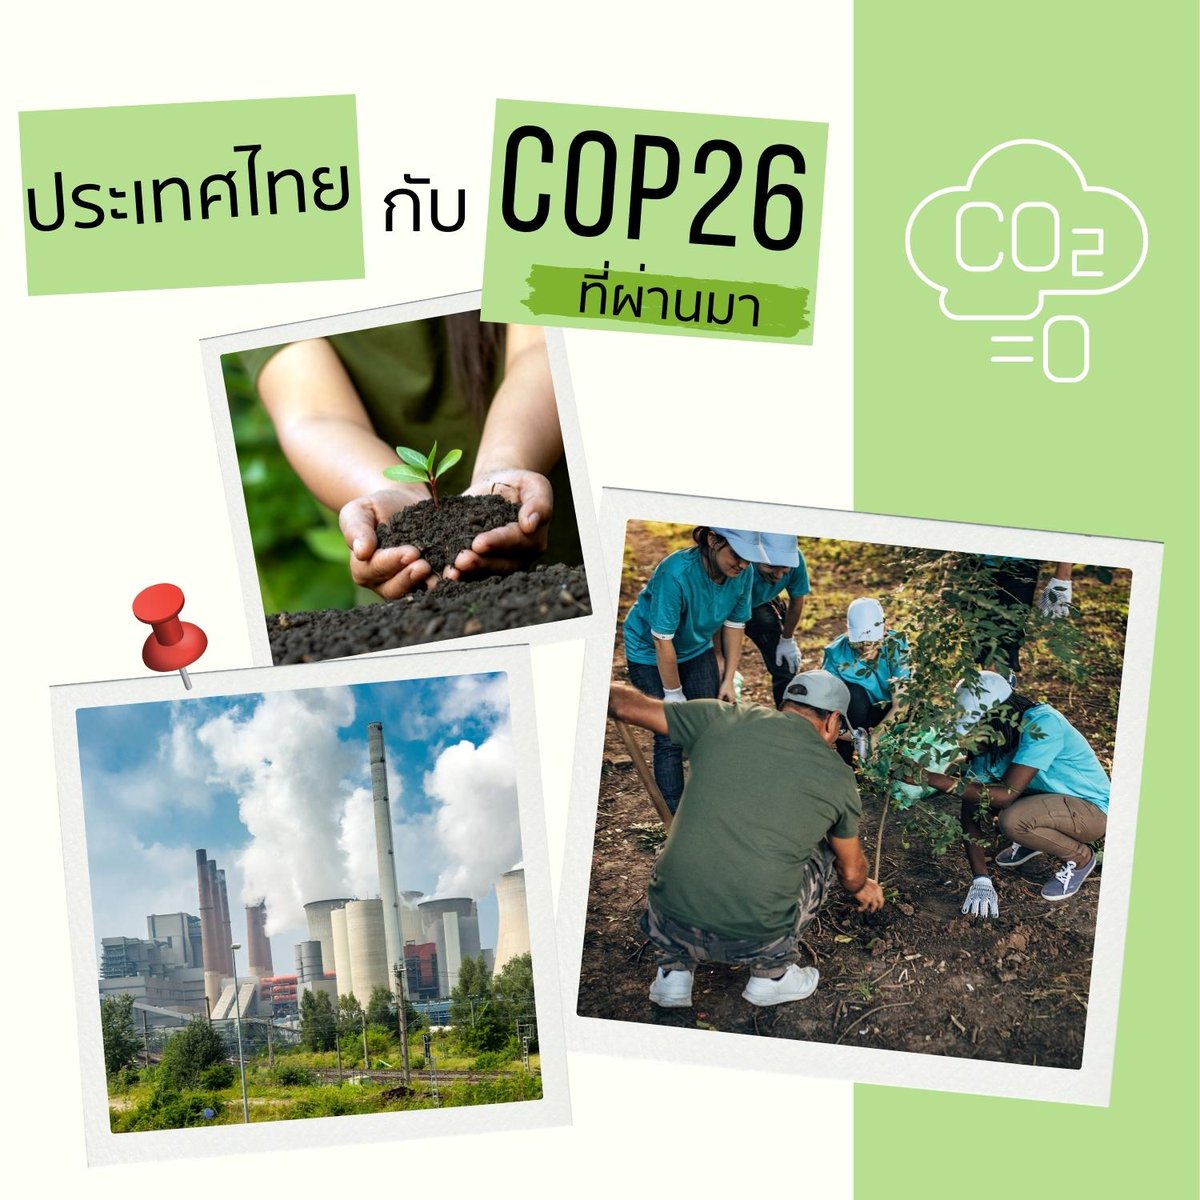 ทำความรู้จัก COP26 ที่ผ่านมา ก่อนไทยเข้าร่วม COP27
เพื่อร่วมหาแนวทางยับยั้งป้องการและปรับตัวต่อการเปลี่ยนแปลงสภาพภูมิอากาศ
#cop27egypt #ClimateAction #Netzero #Ghgemission #ClimateChange #onep